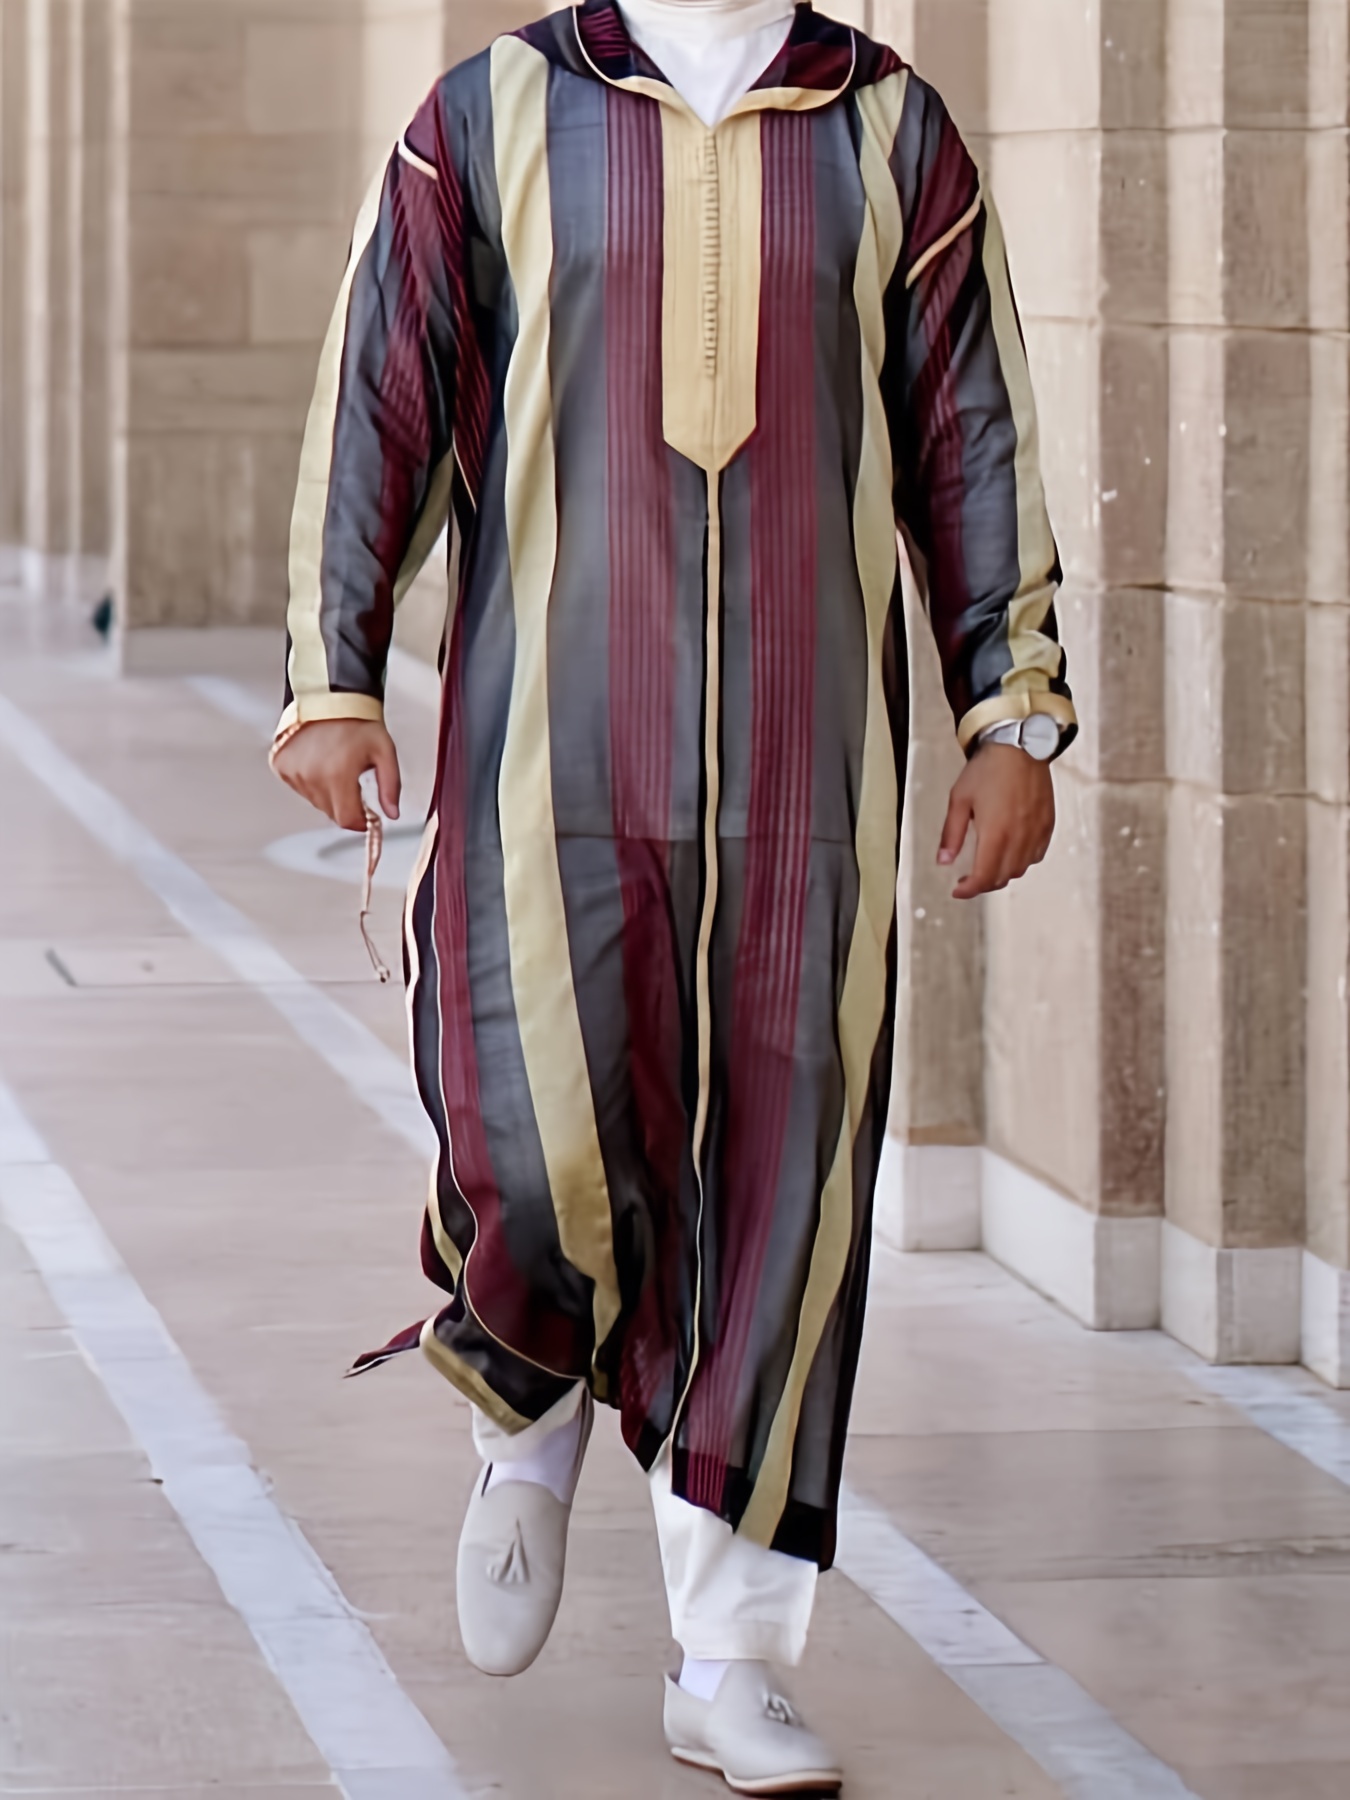 Chilaba marroquí tradicional de rayas rojas, una de las prendas para hombre  marroquíes más populares